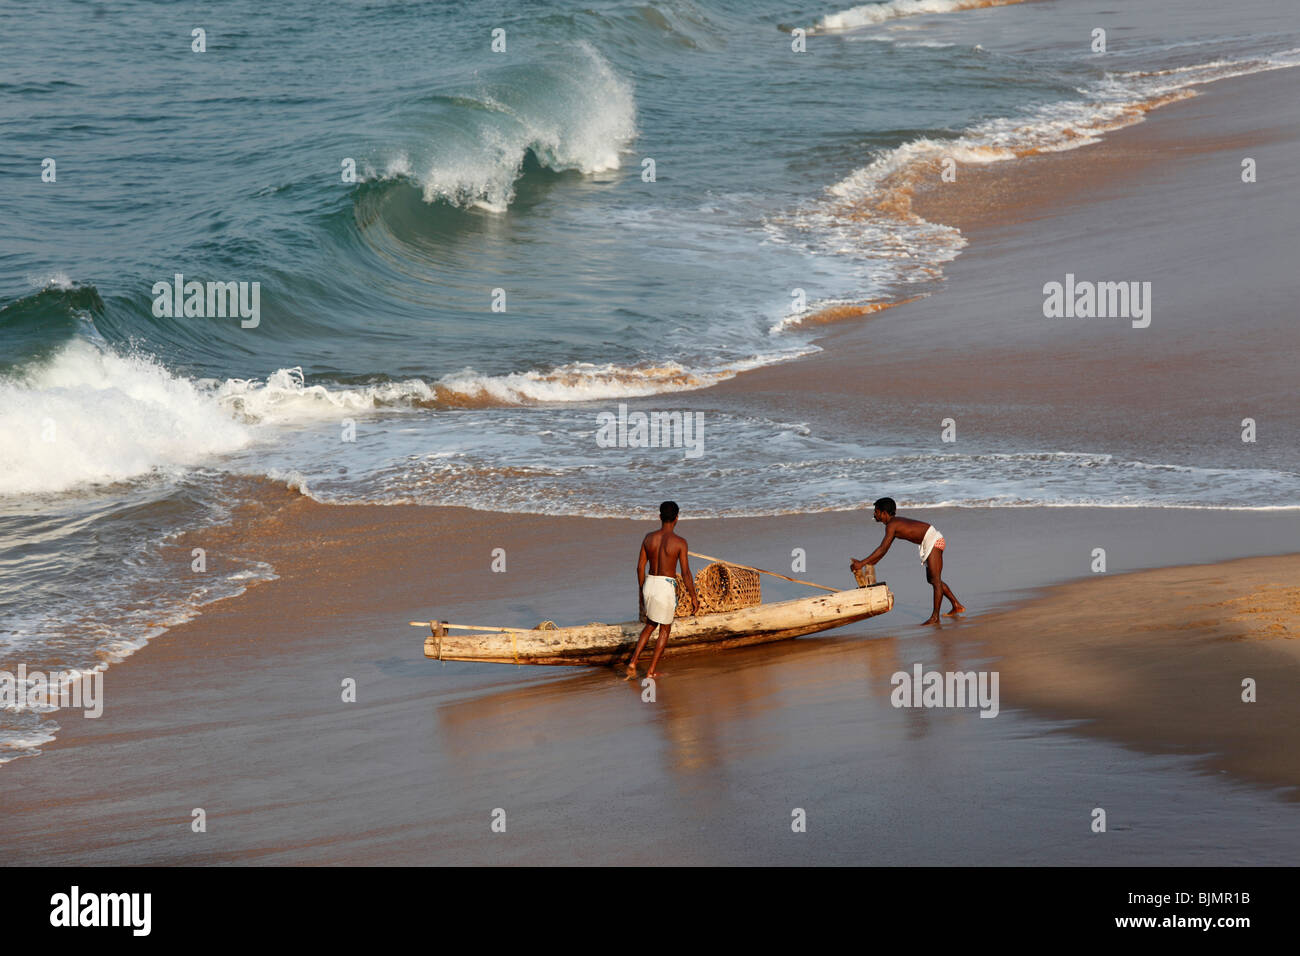 Deux sections locales d'un simple bateau de pêche sur une plage au sud de Kovalam, côte de Malabar, Malabar, Kerala, Inde du Sud, Inde, Asie Banque D'Images